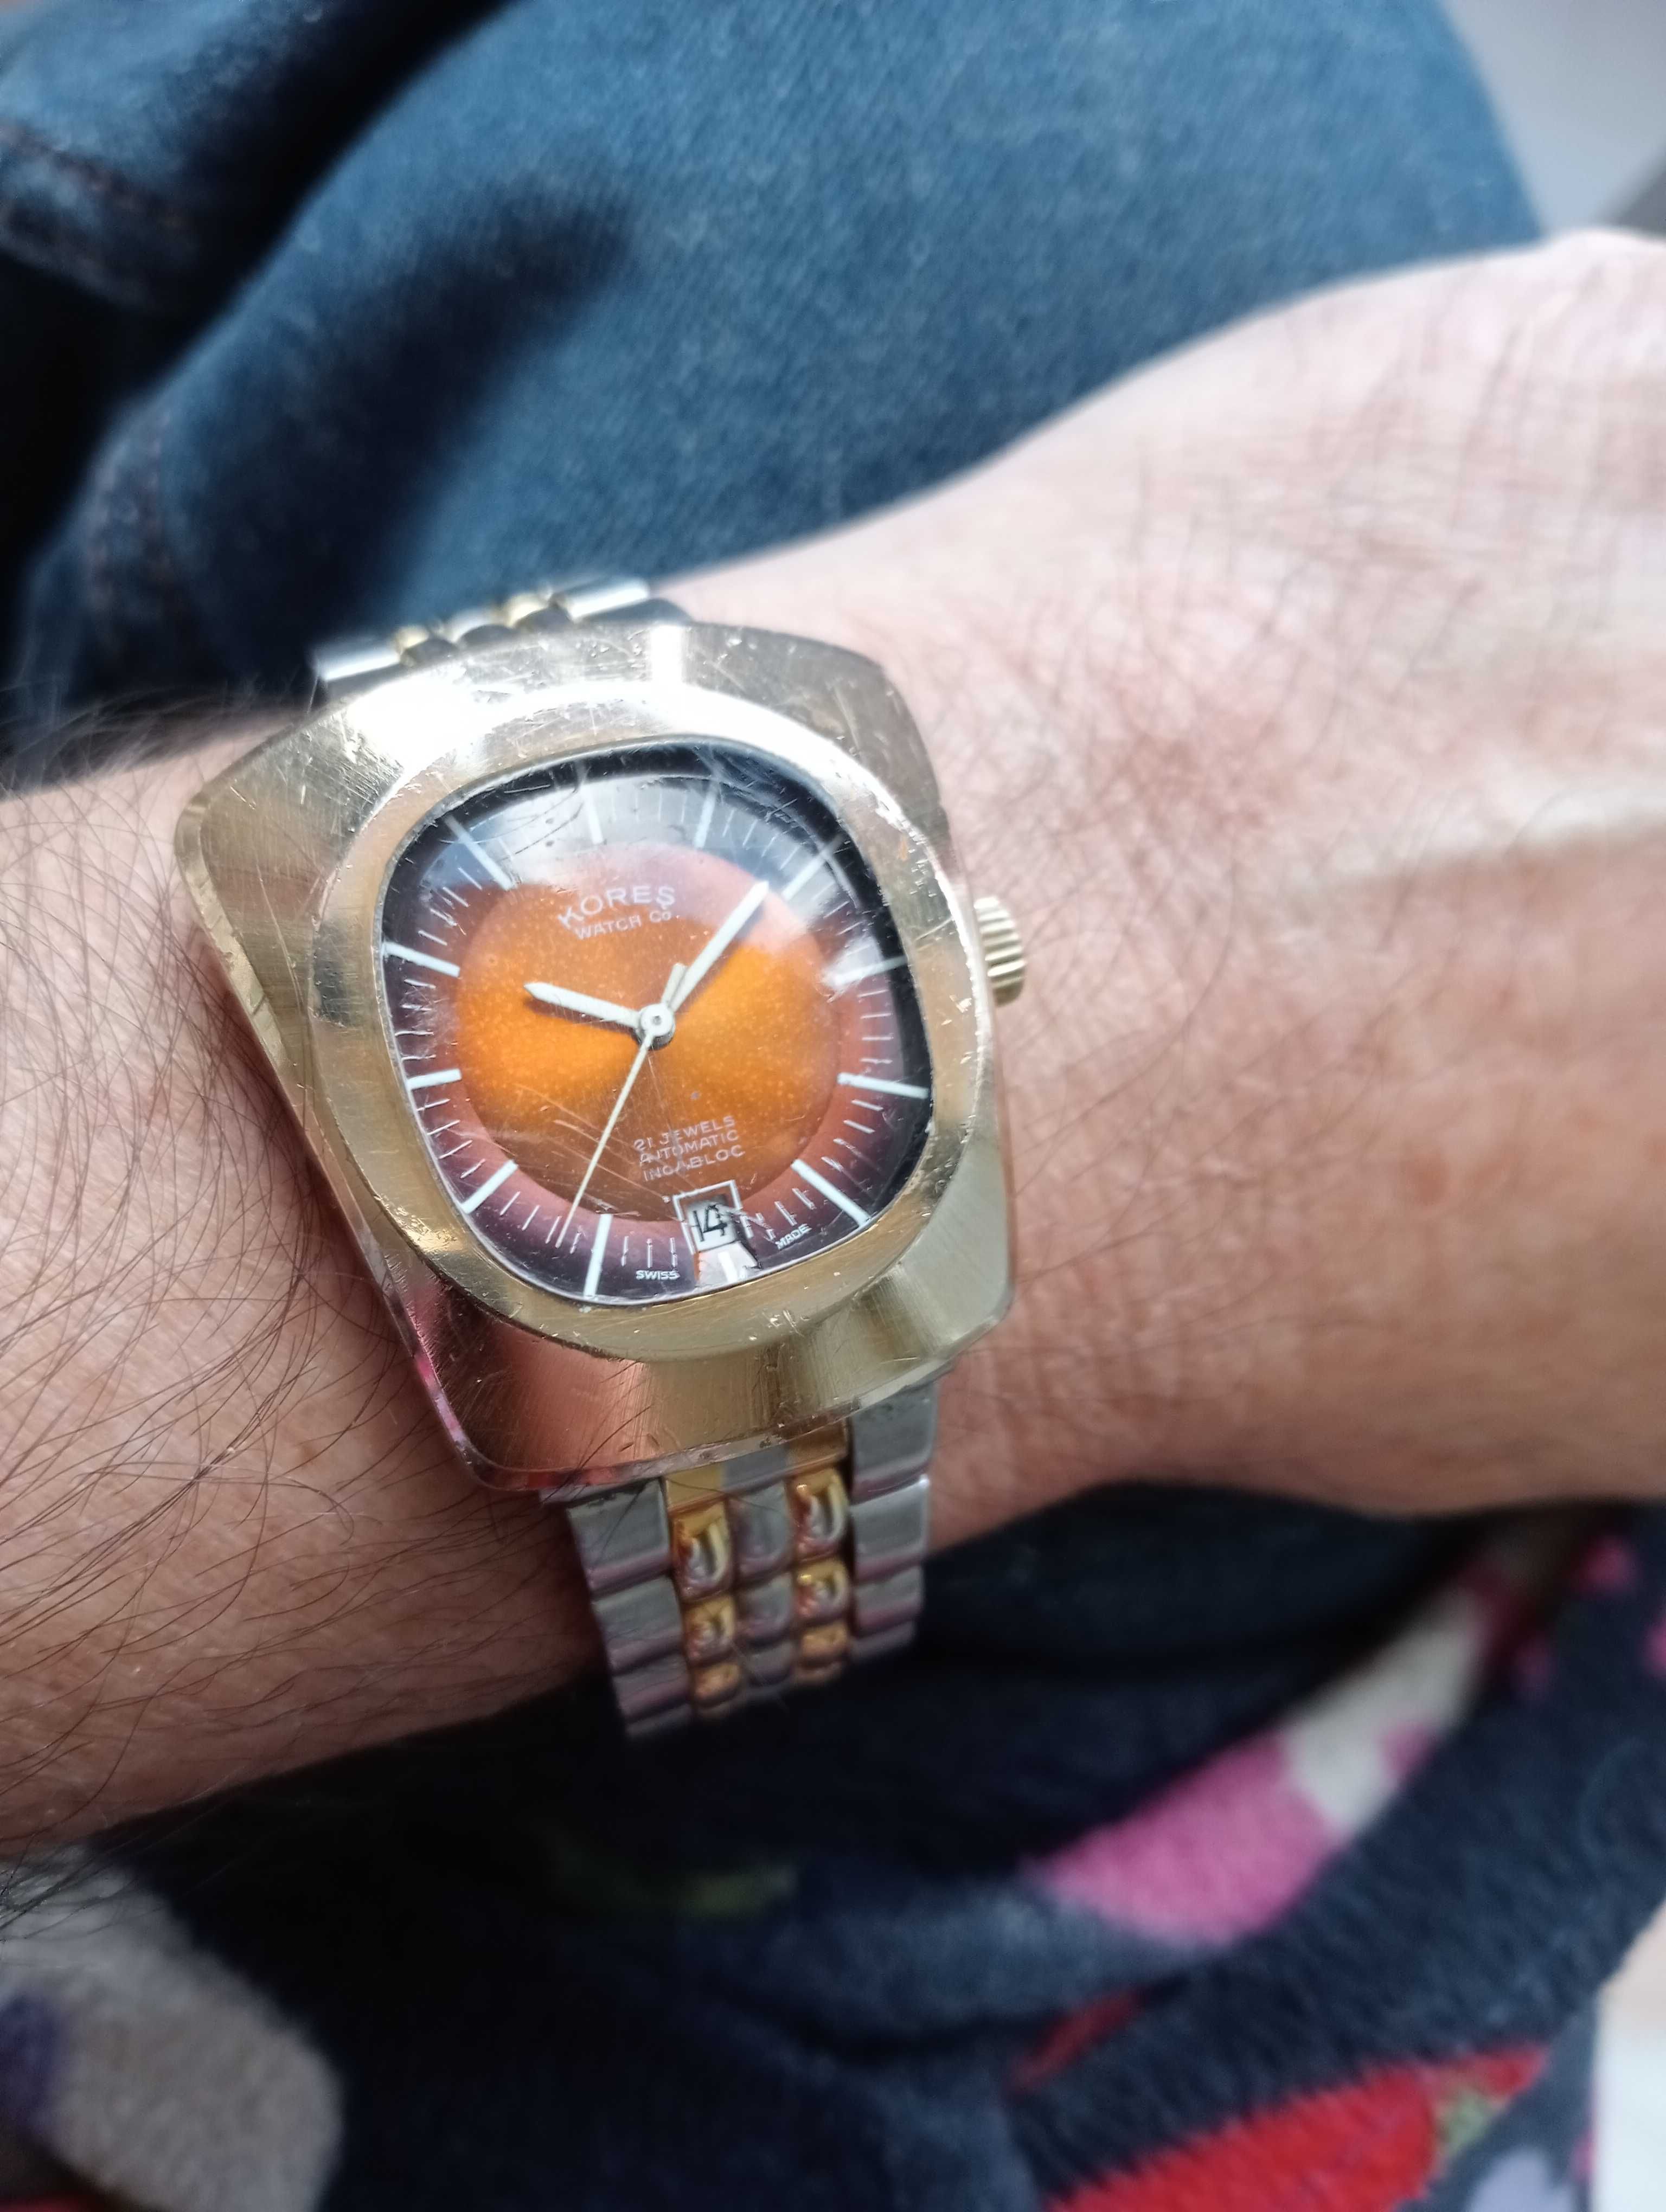 Relógio Kores Watch CO coleção automático